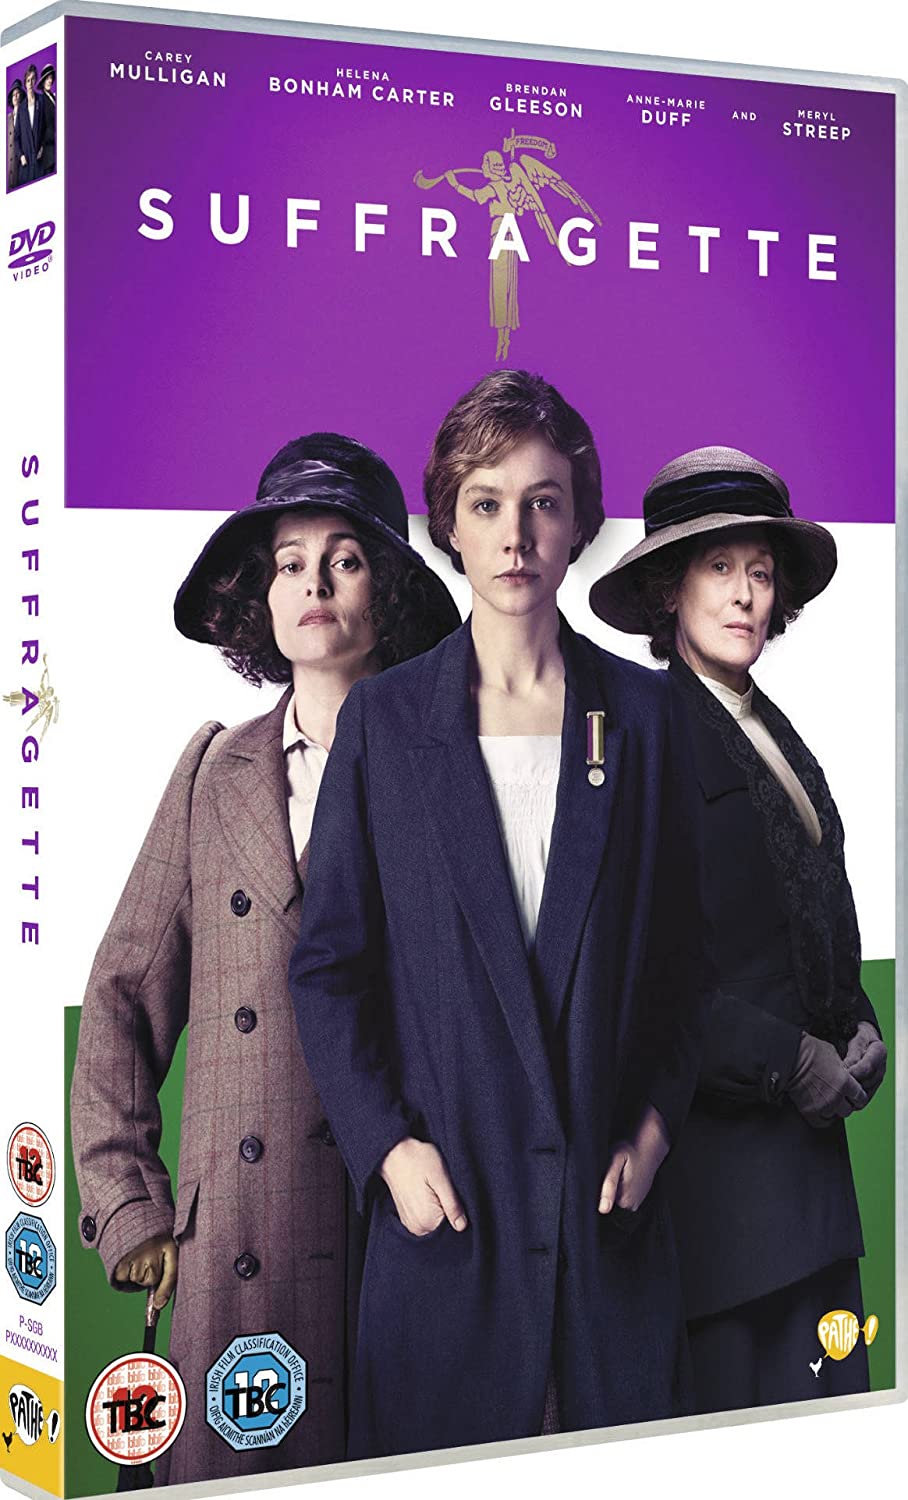 Suffragette - Drama/Historical [DVD]